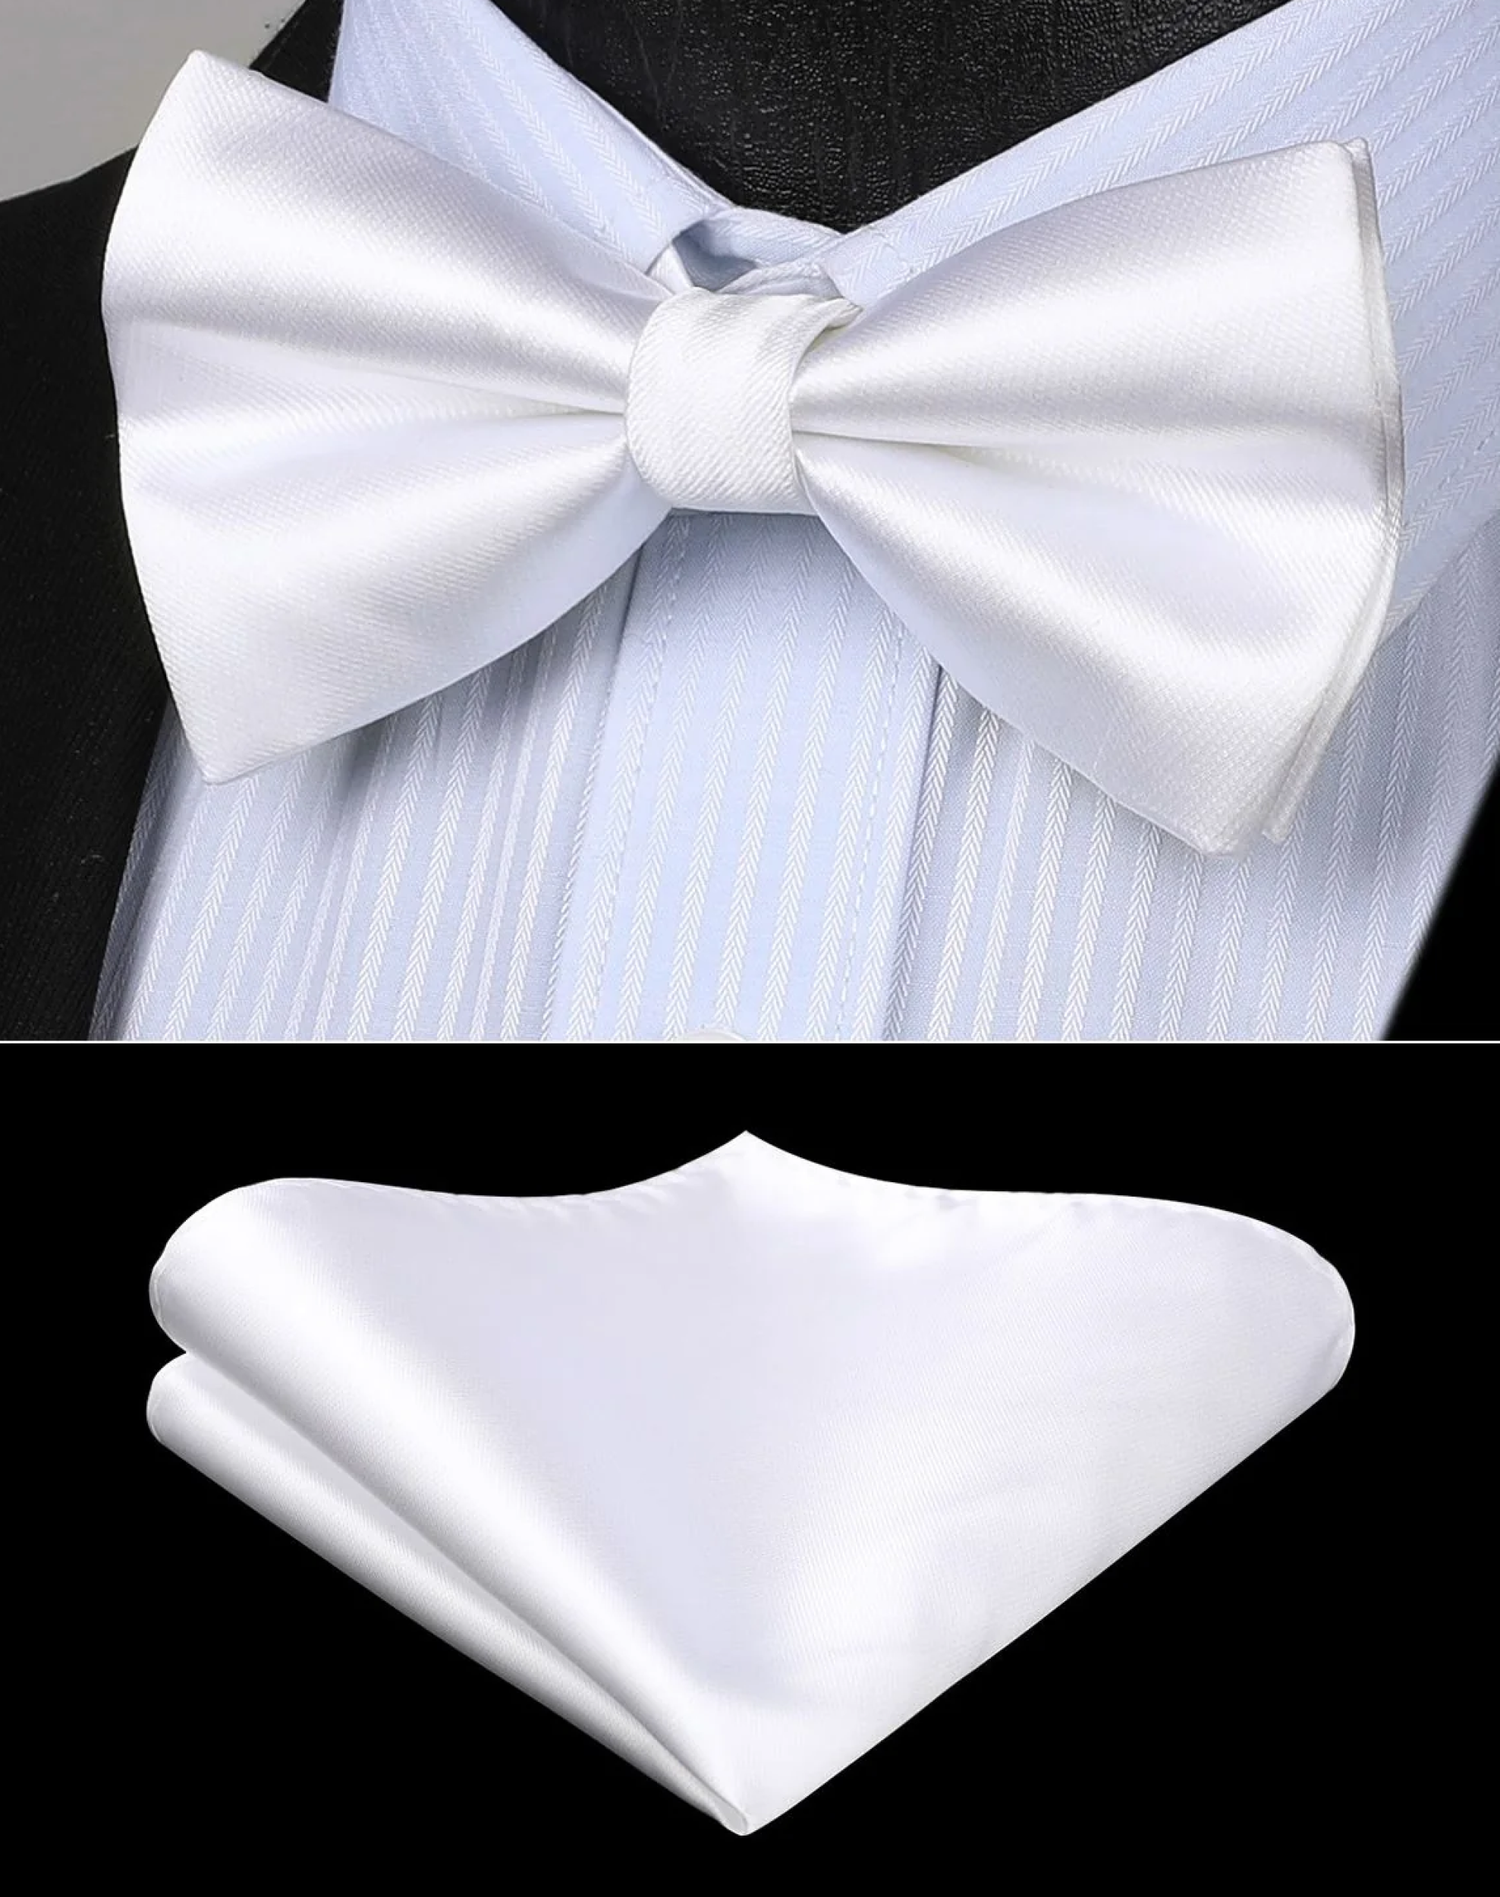 The Tuxedo Bow Tie